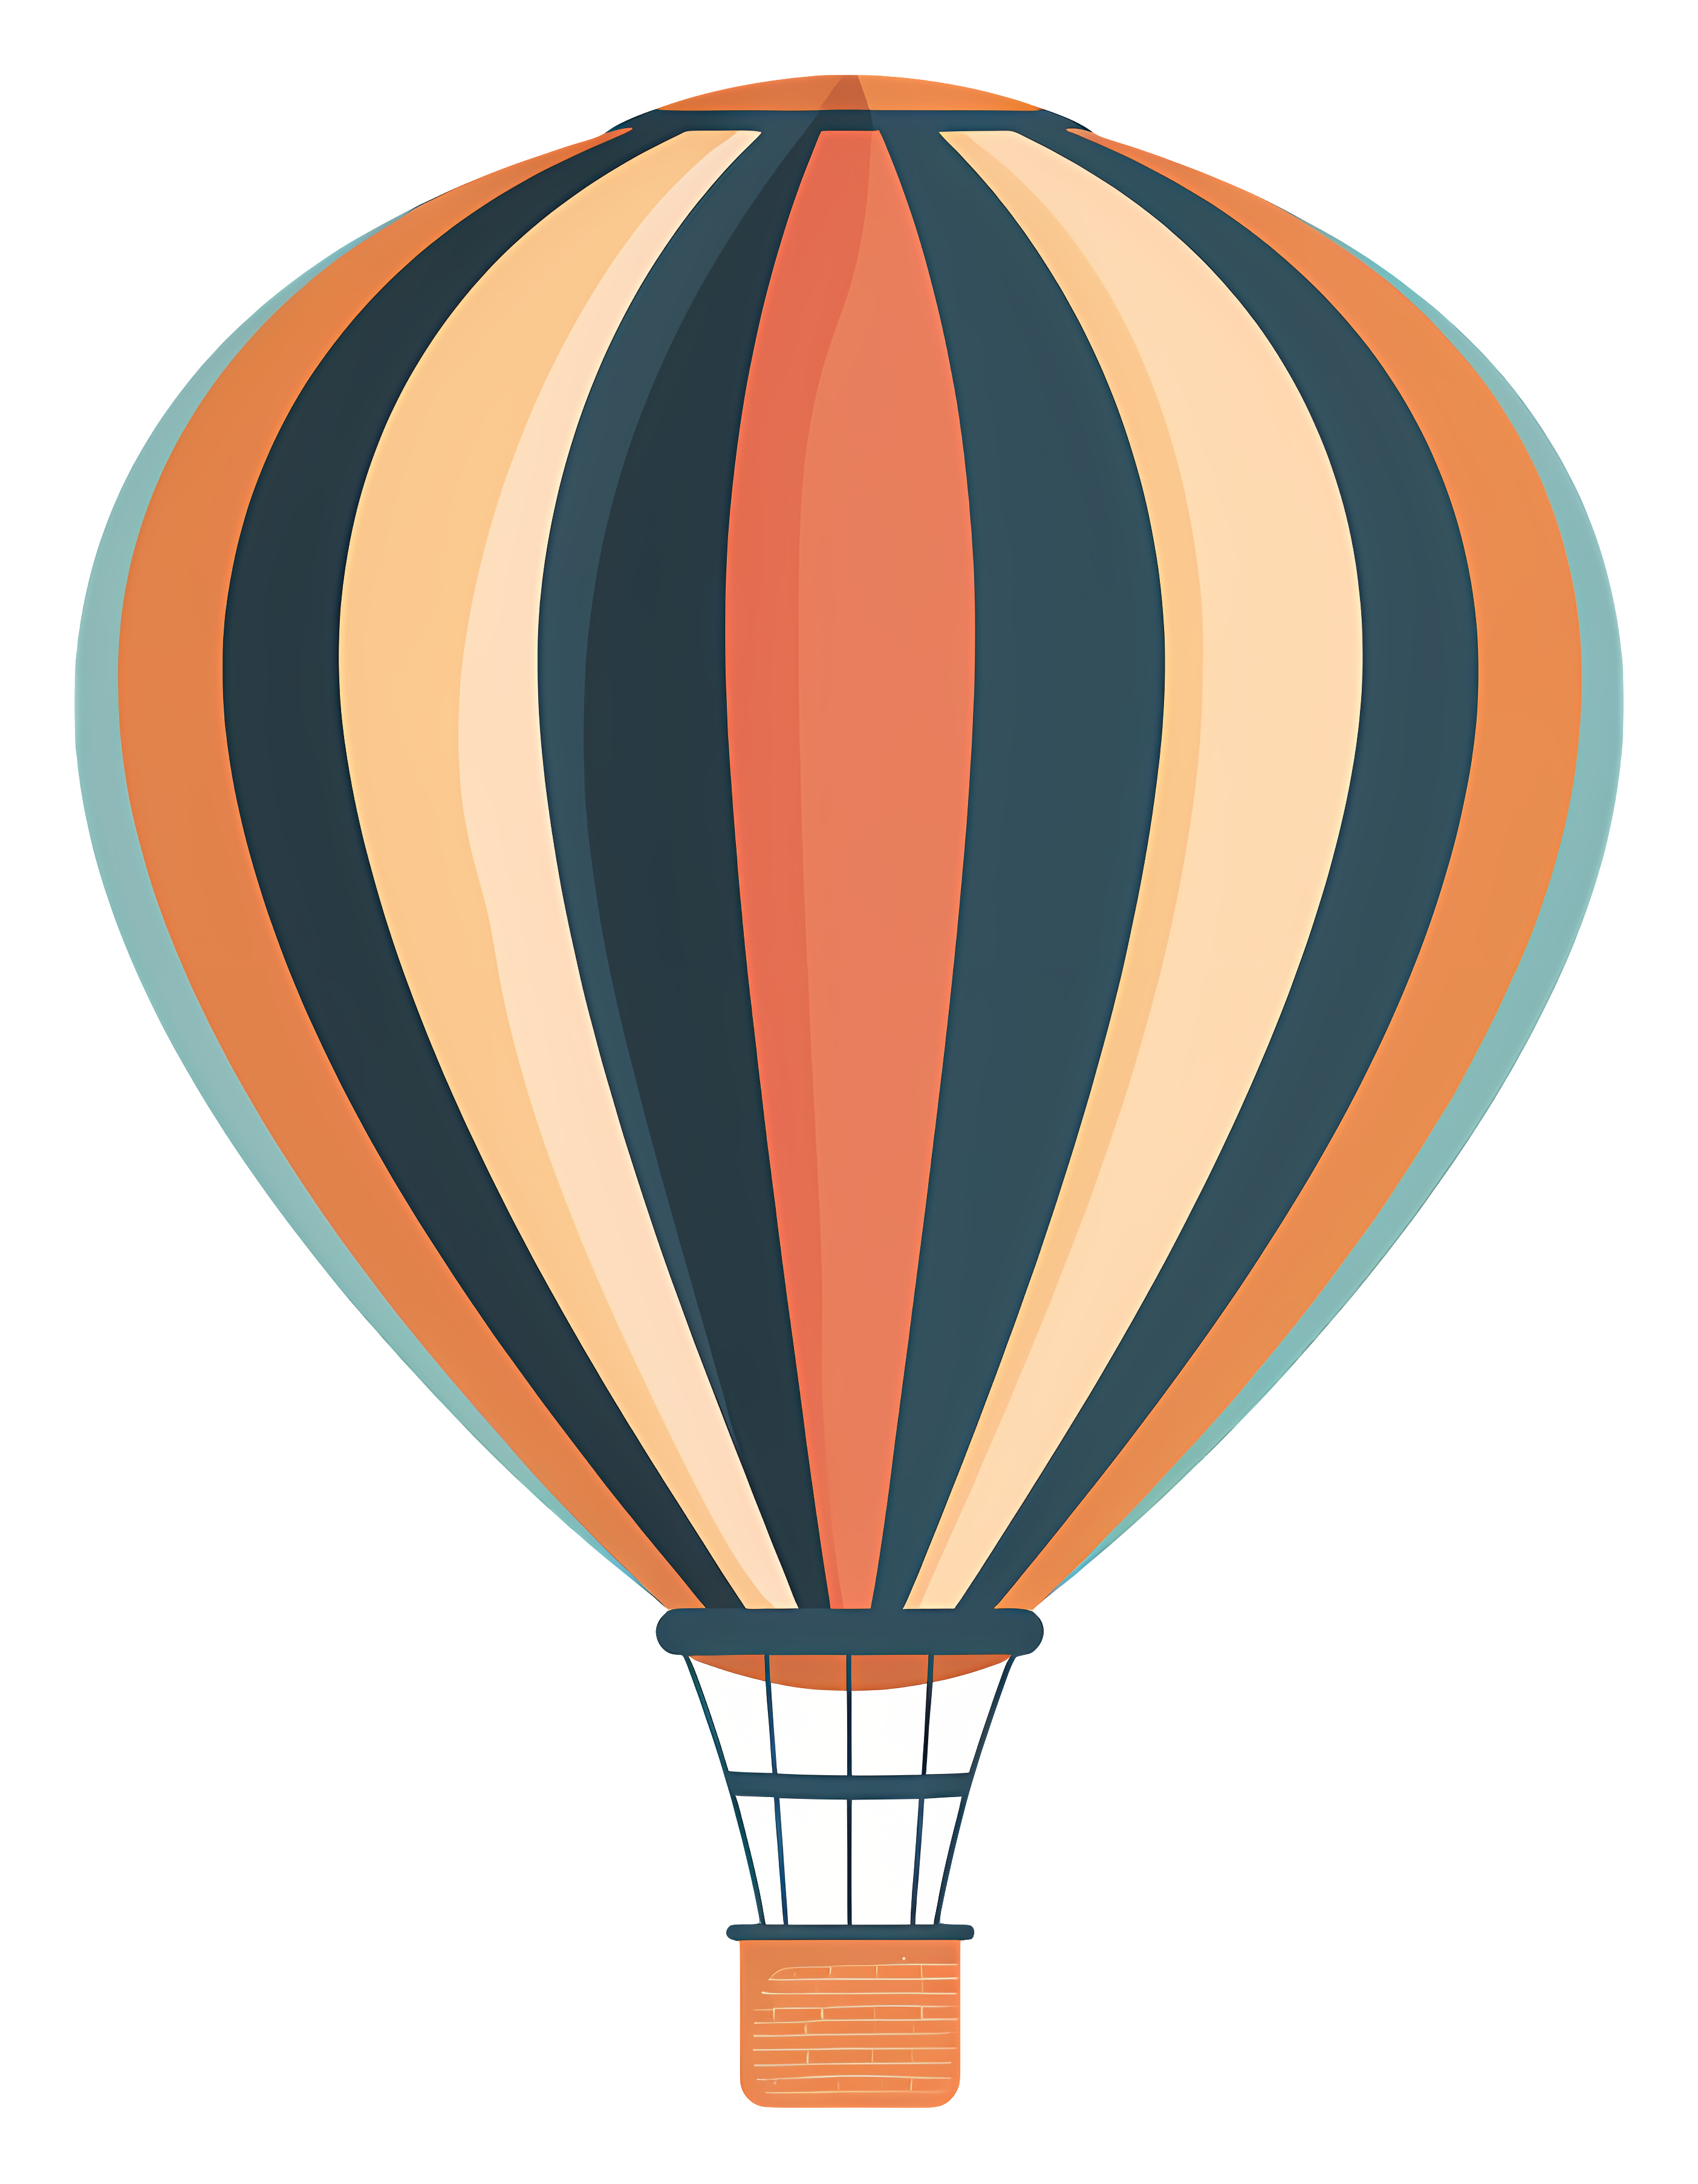 Simple, minimalistic hot air balloon design Clipart